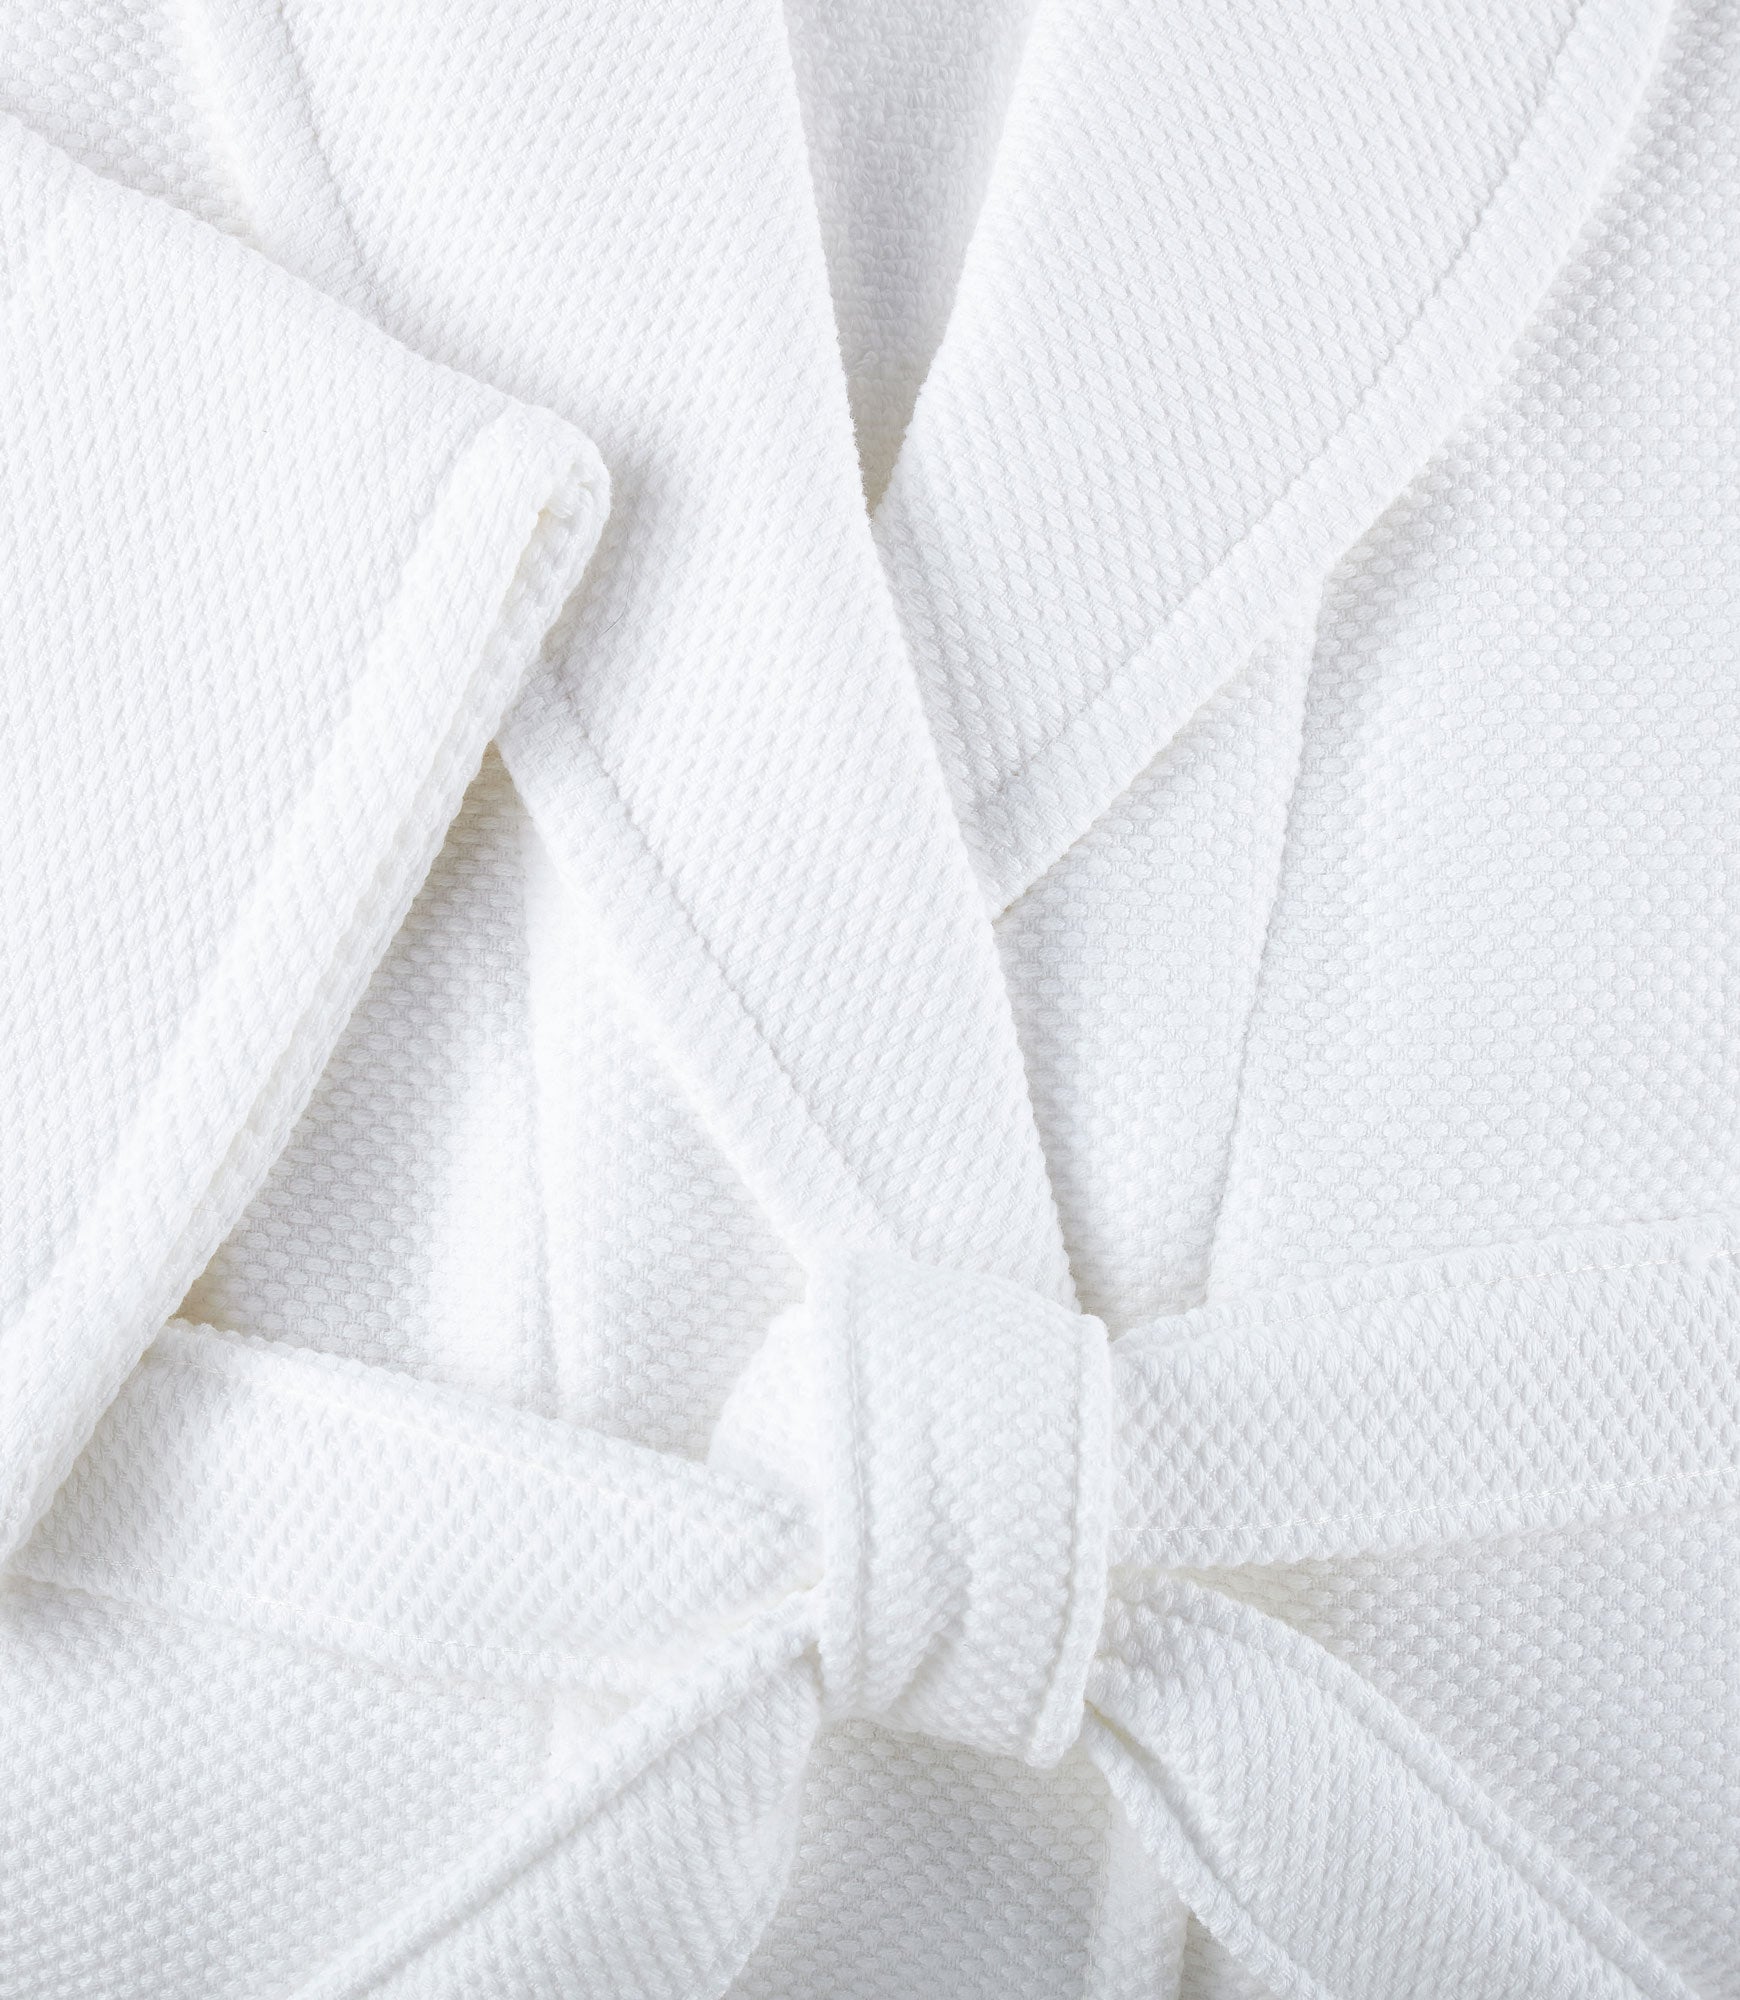 Spa Robe in White